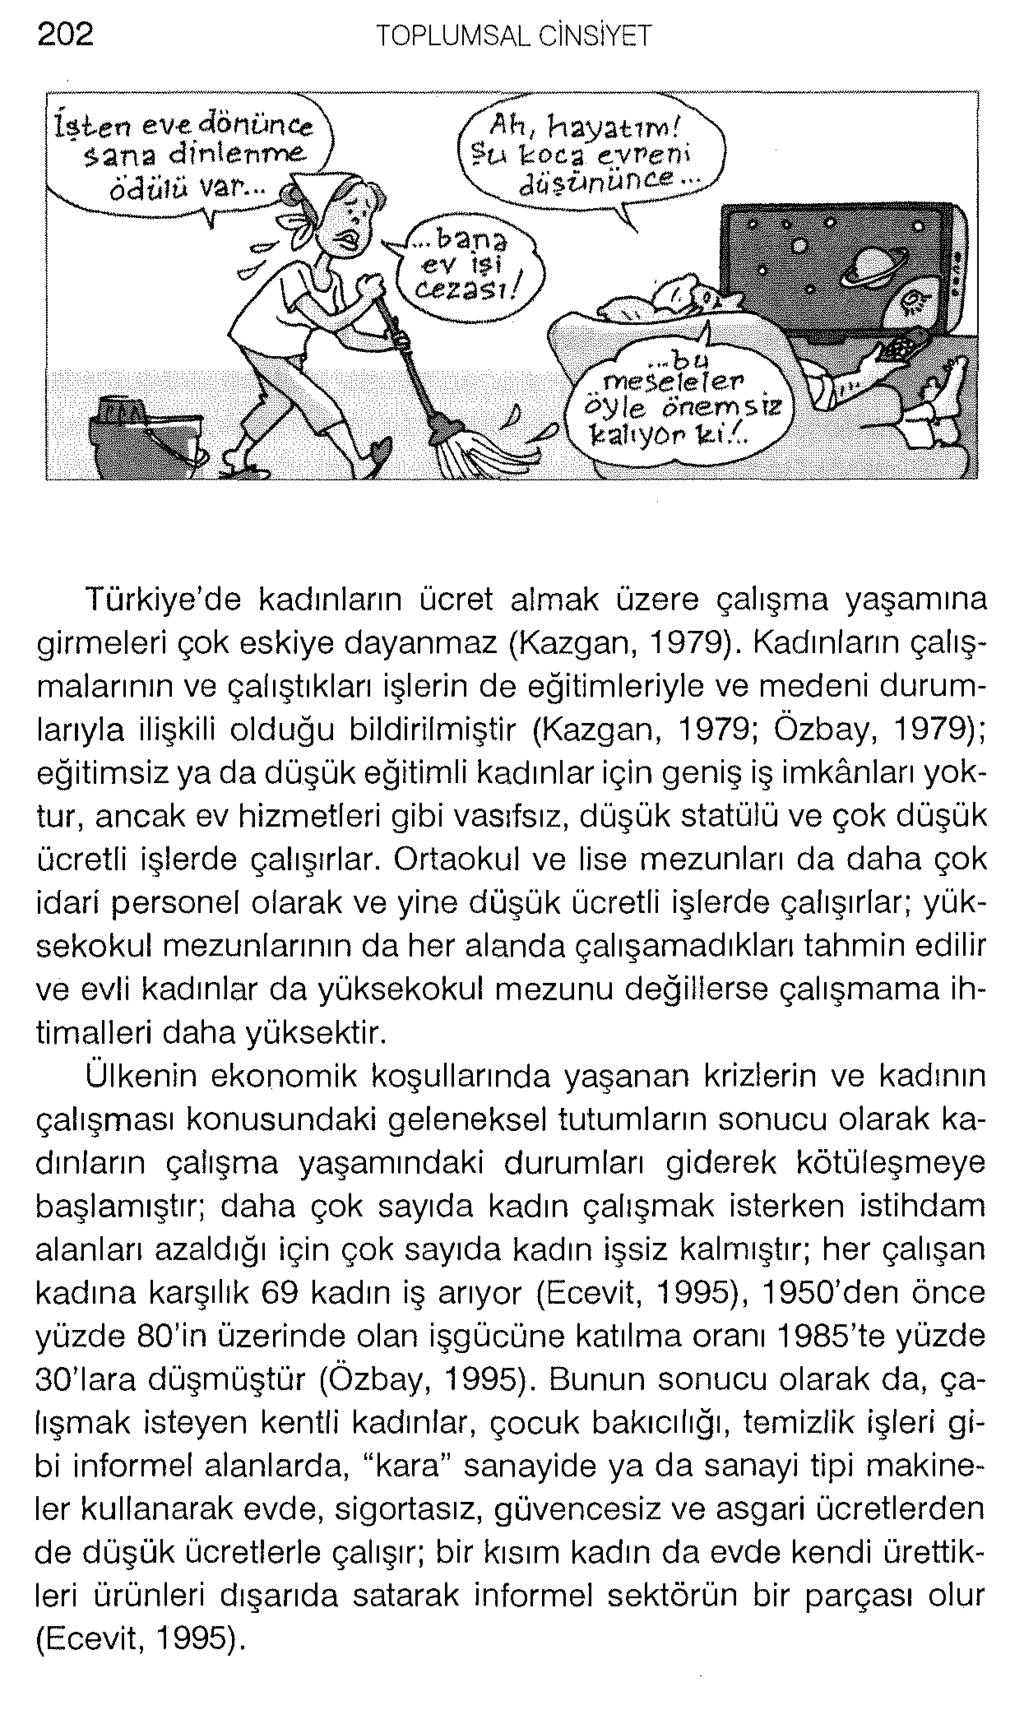 İşten ev«dönünce\ "sana dinlenme ) v ödülü var. Türkiye de kadınların ücret almak üzere çalışma yaşamına girmeleri çok eskiye dayanmaz (Kazgan, 1979).